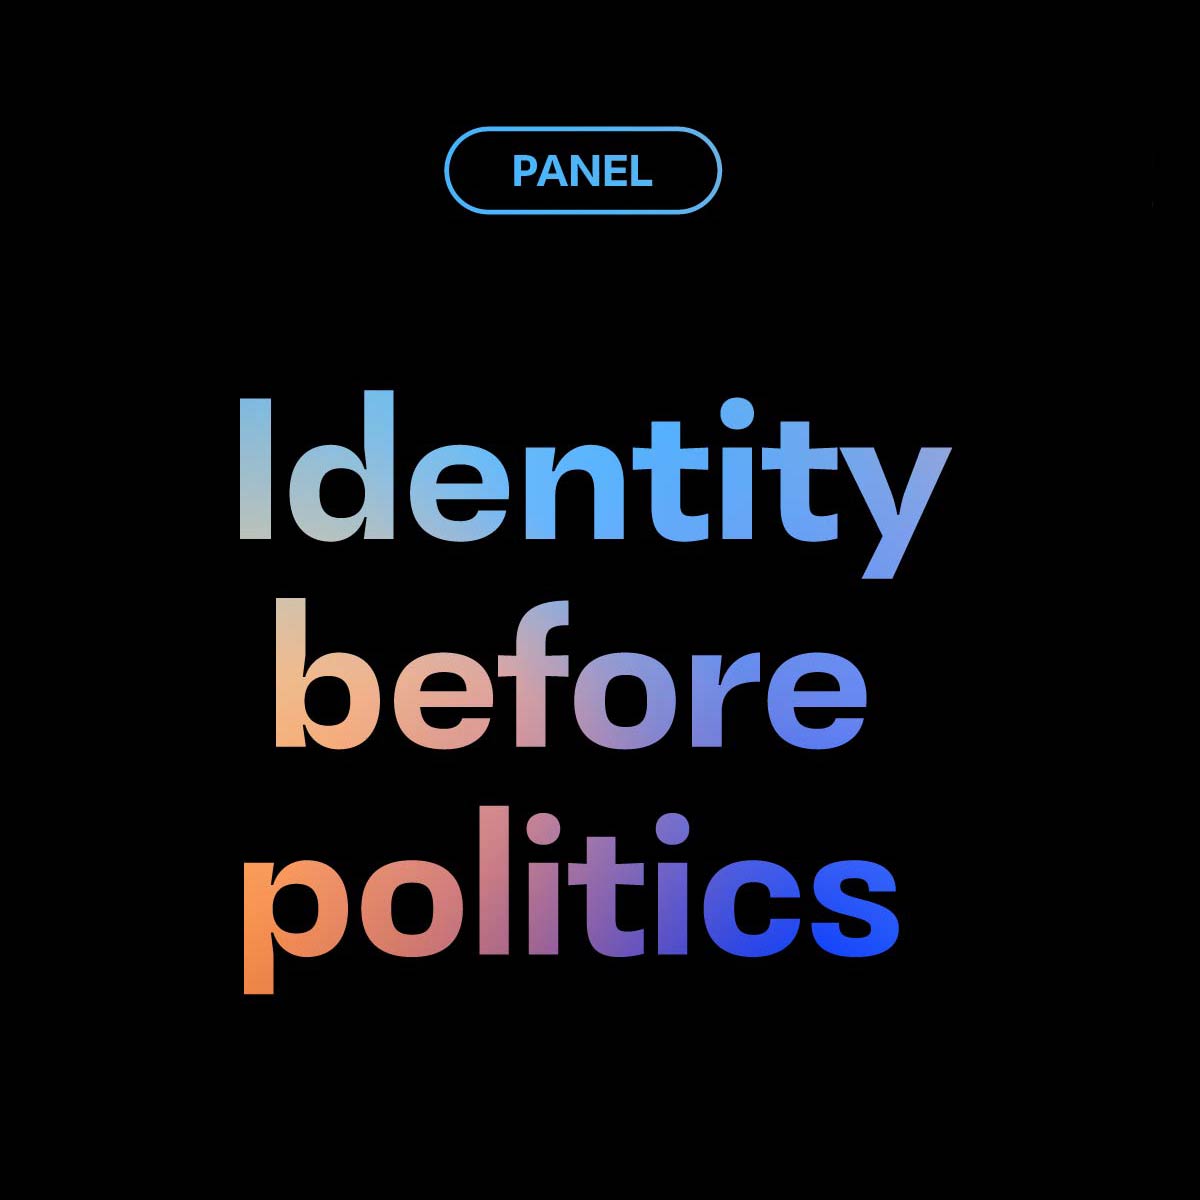 Schwarzer Hintergrund auf dem in blau und oragenem Schriftzug folgendes zu lesen ist: 'Panel: Identity before politics